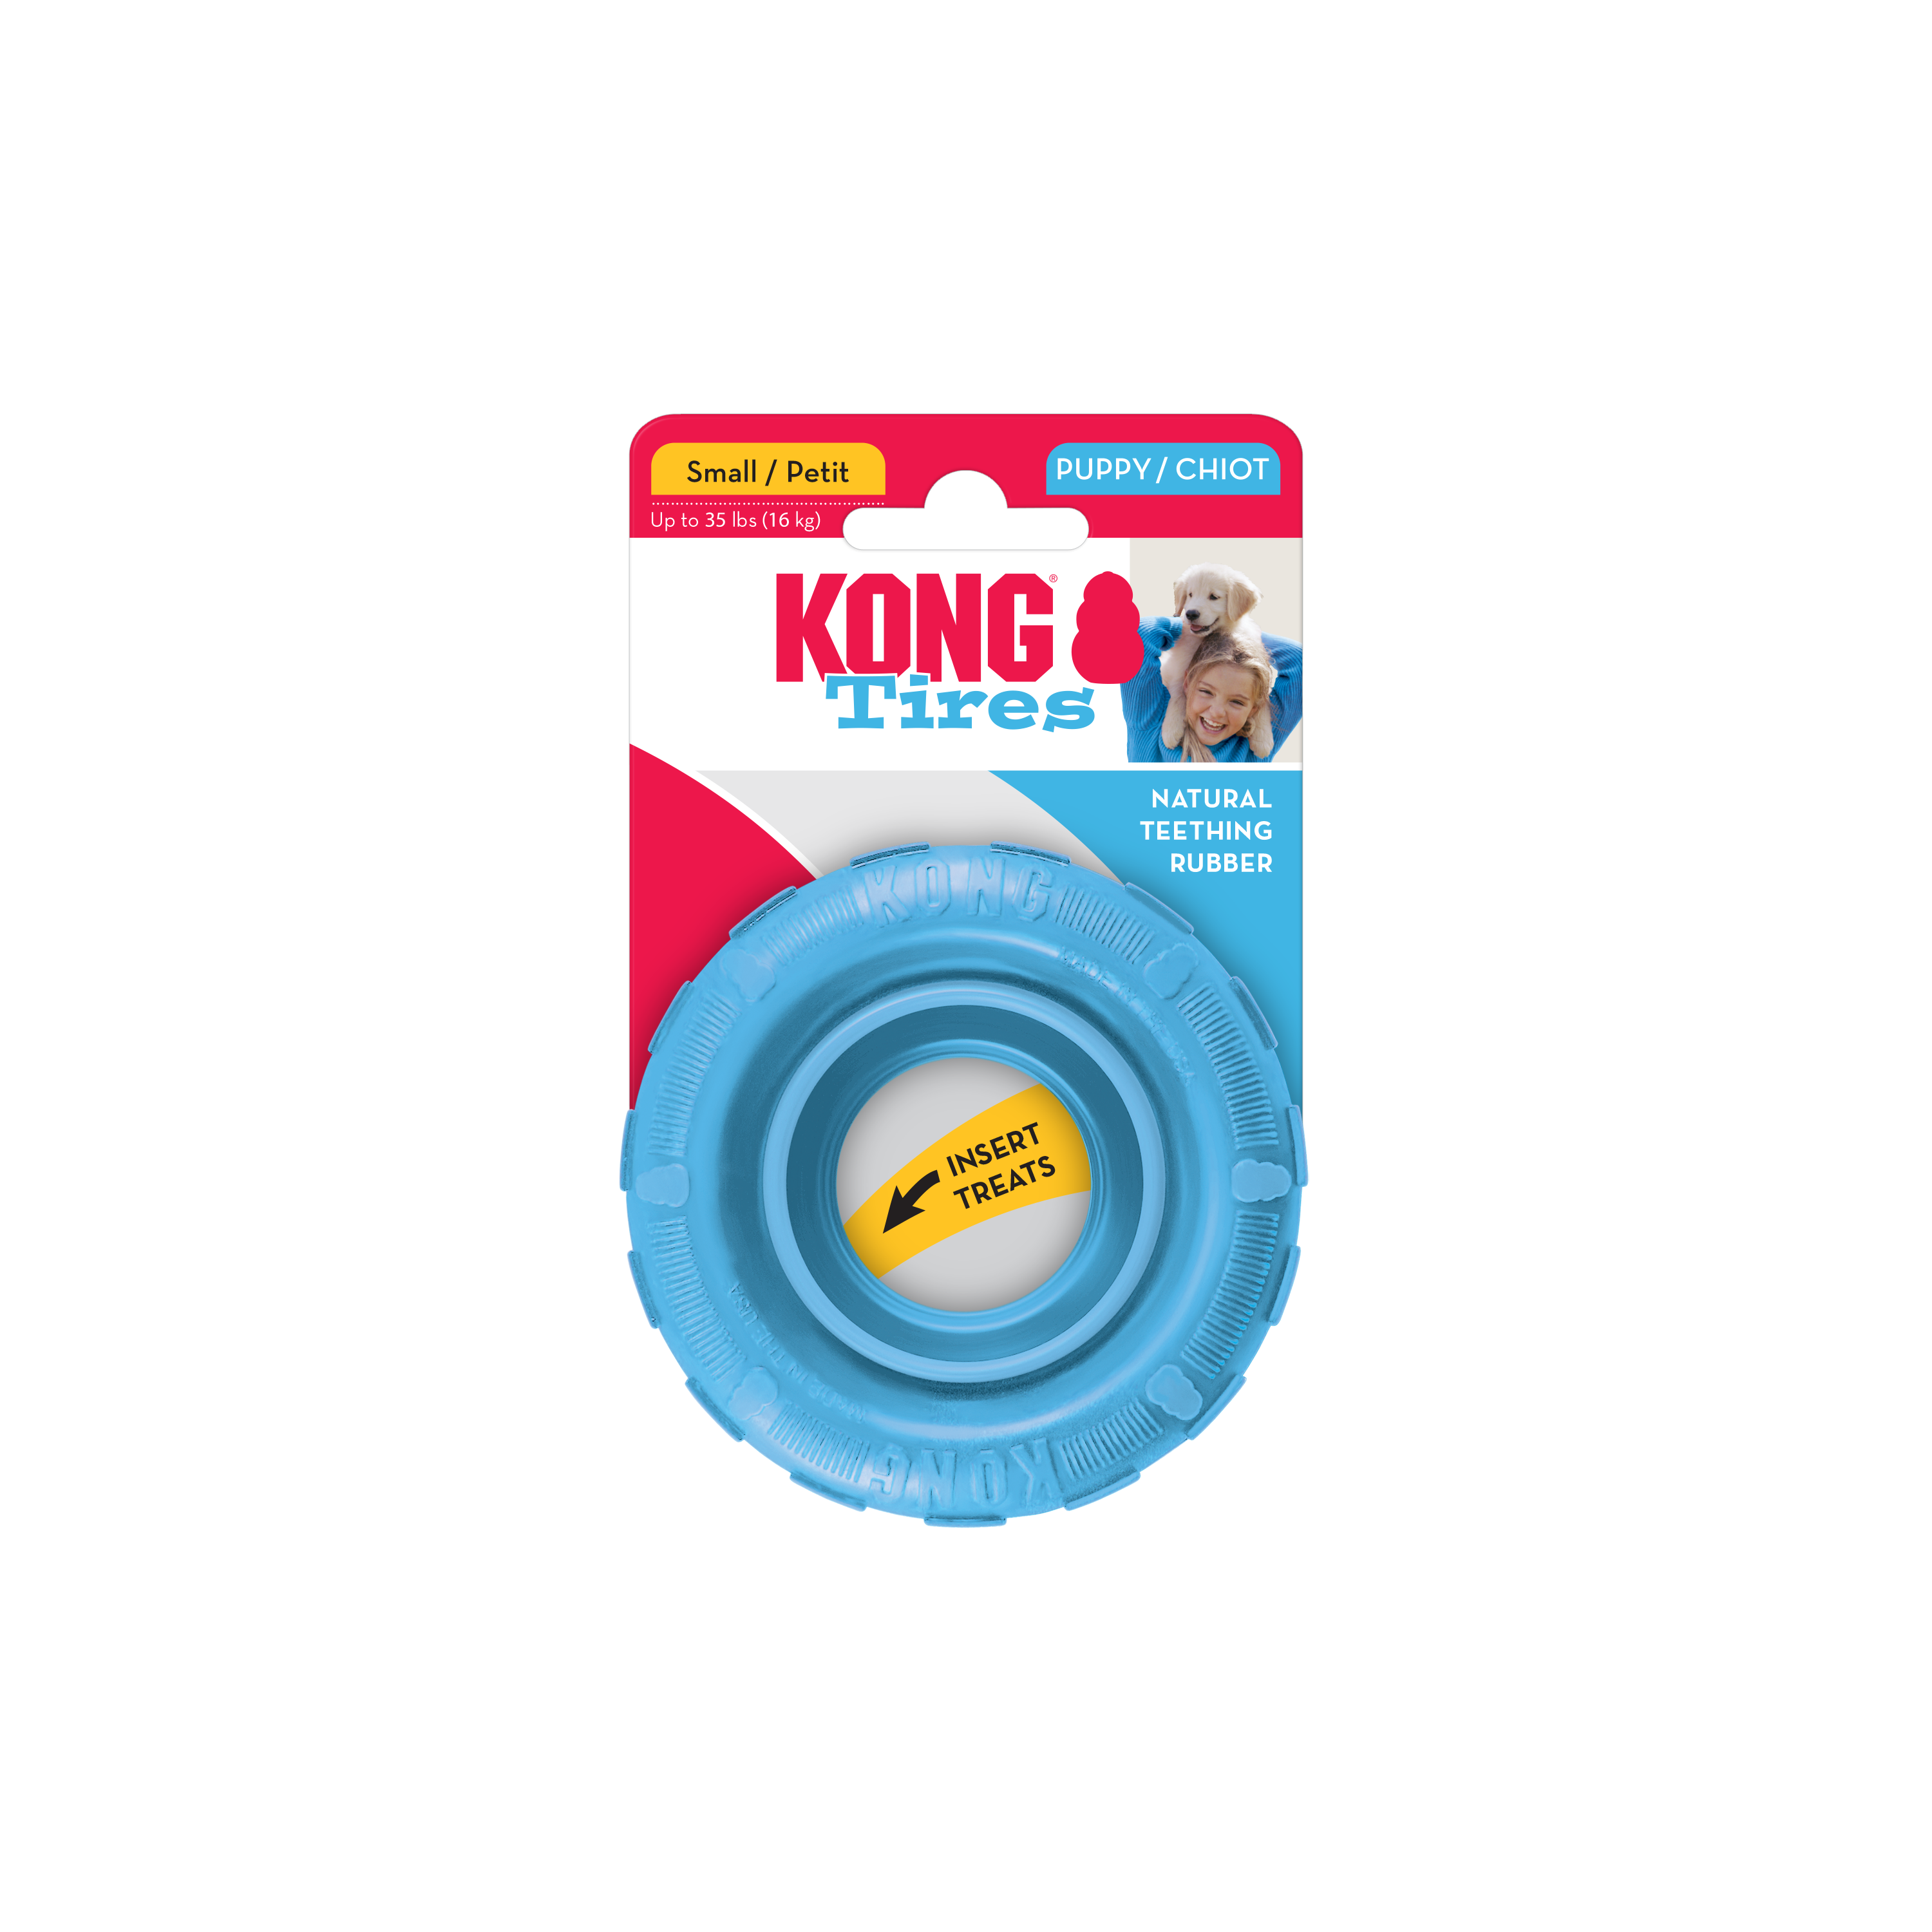 Imagem do produto KONG Puppy Tires na embalagem